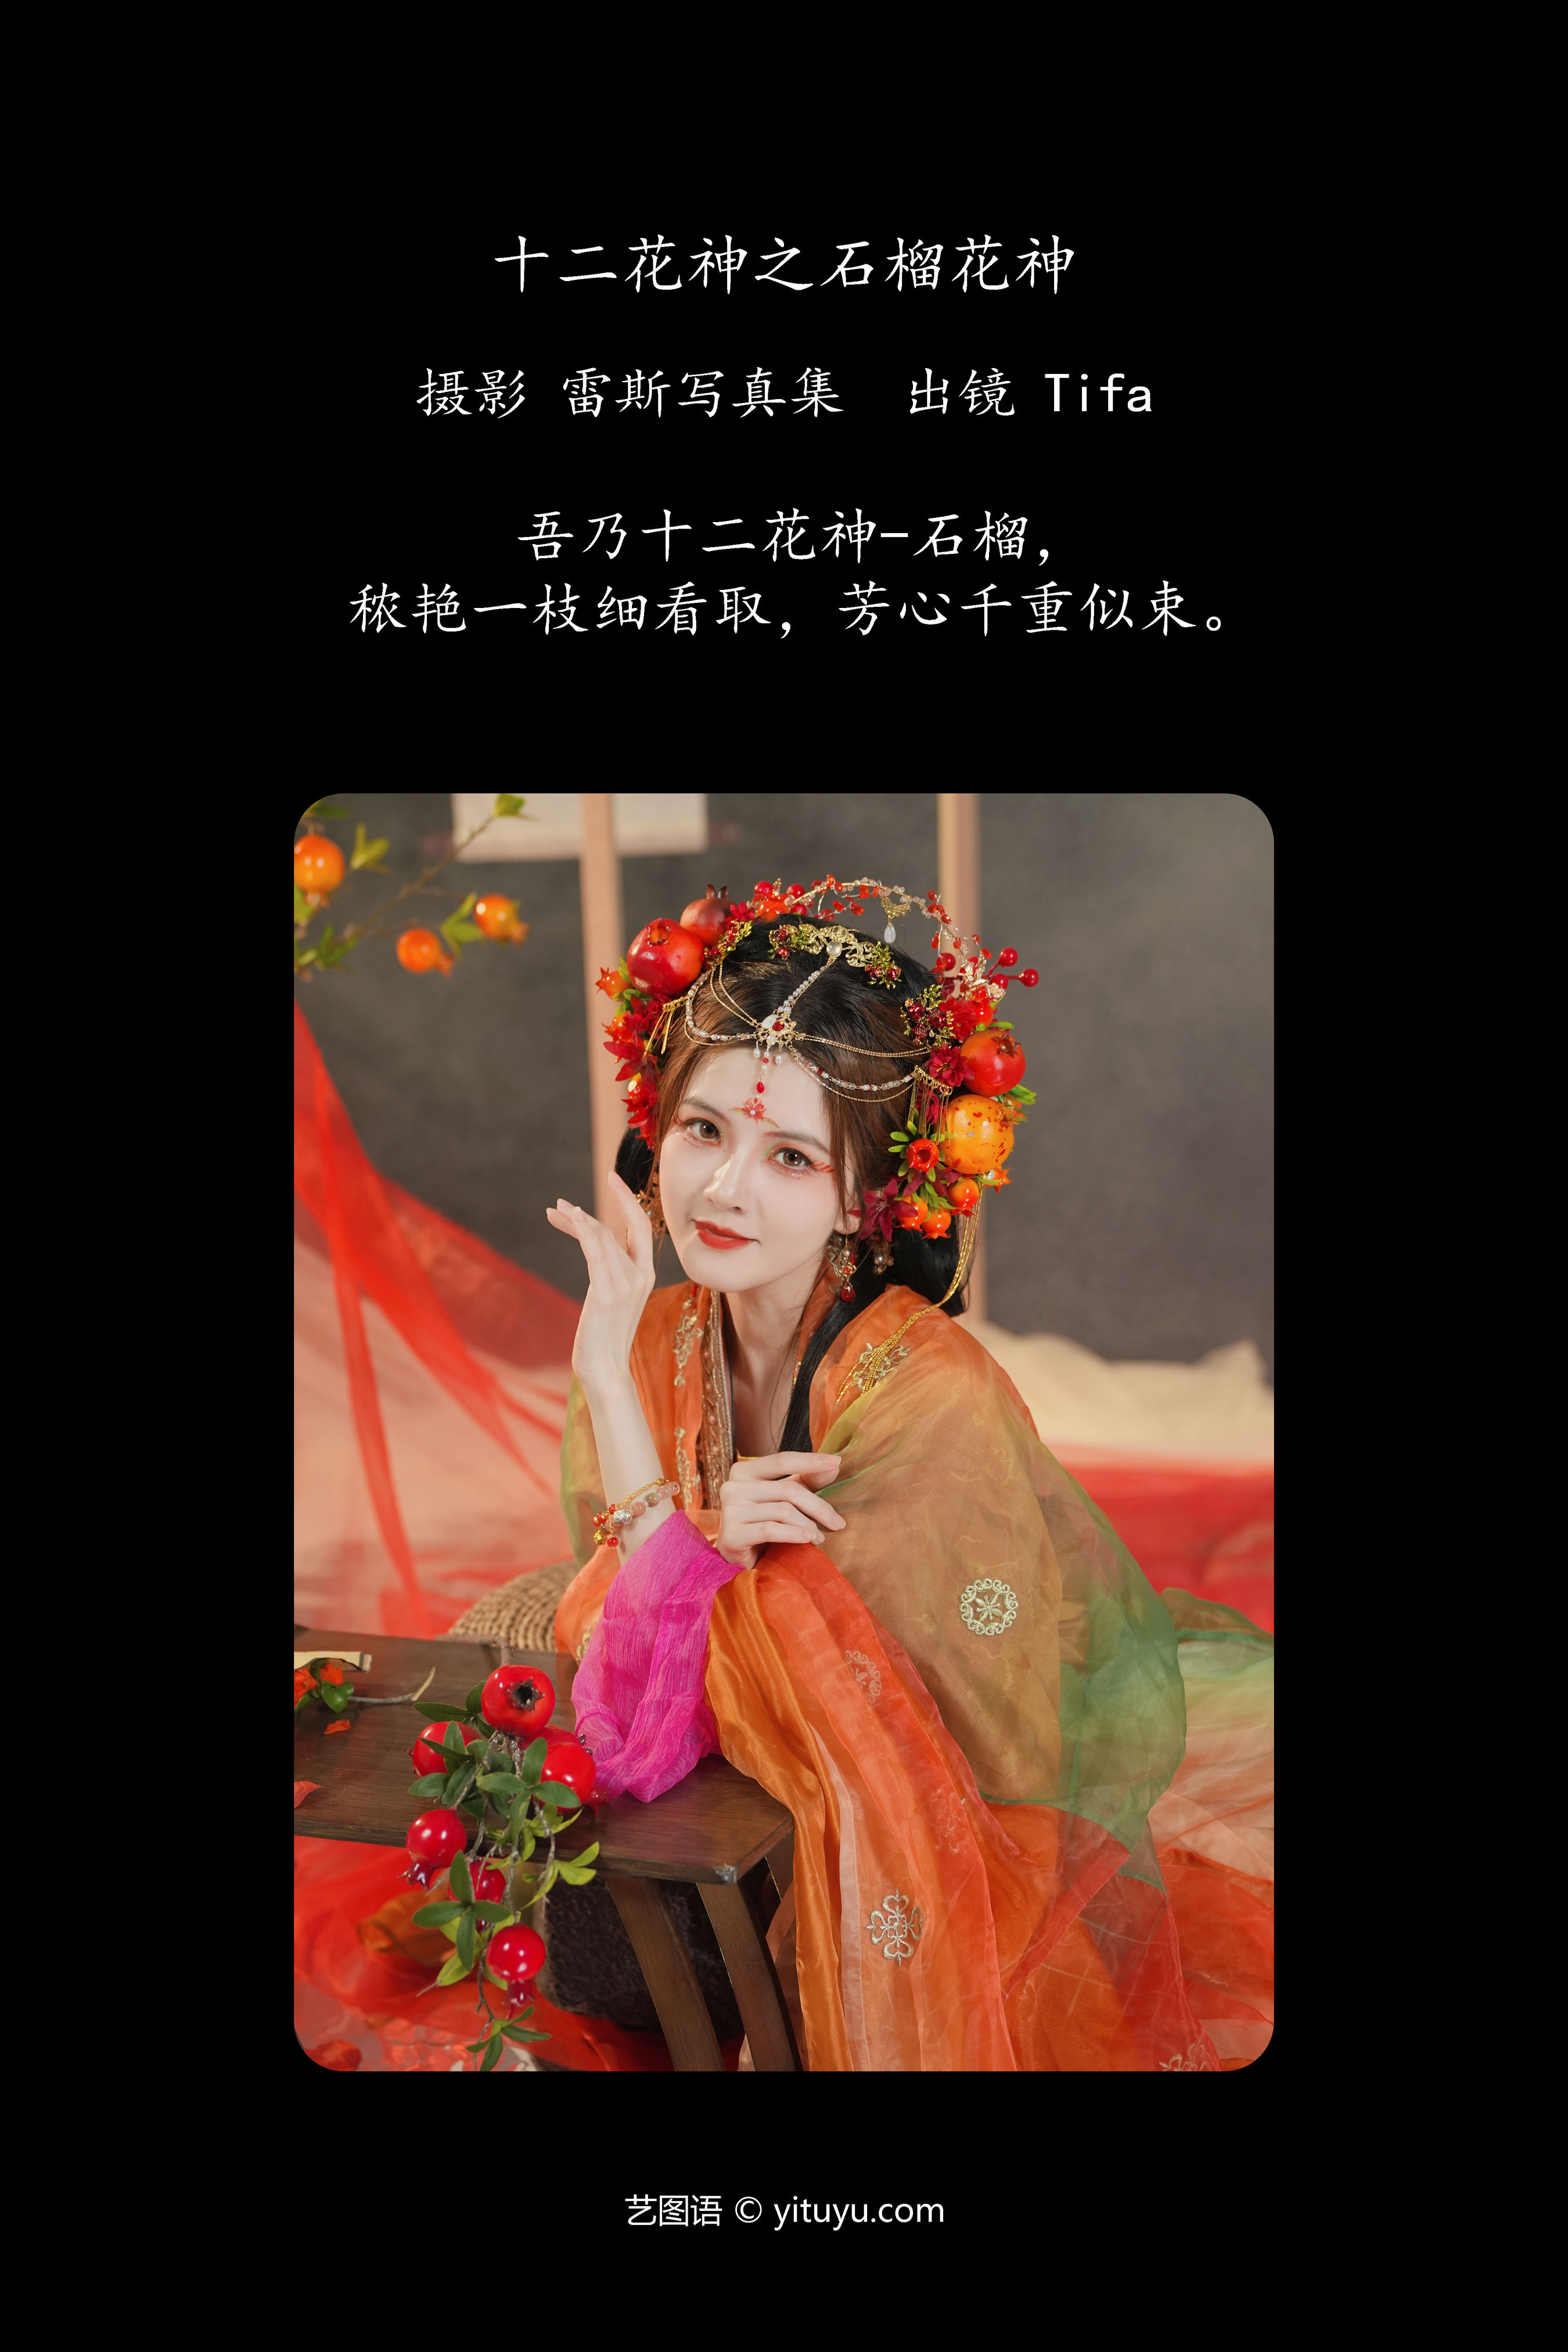 十二花神之石榴花神 古装 汉服 古典 美人 模特 中国风 花 艺术 精美 绝色